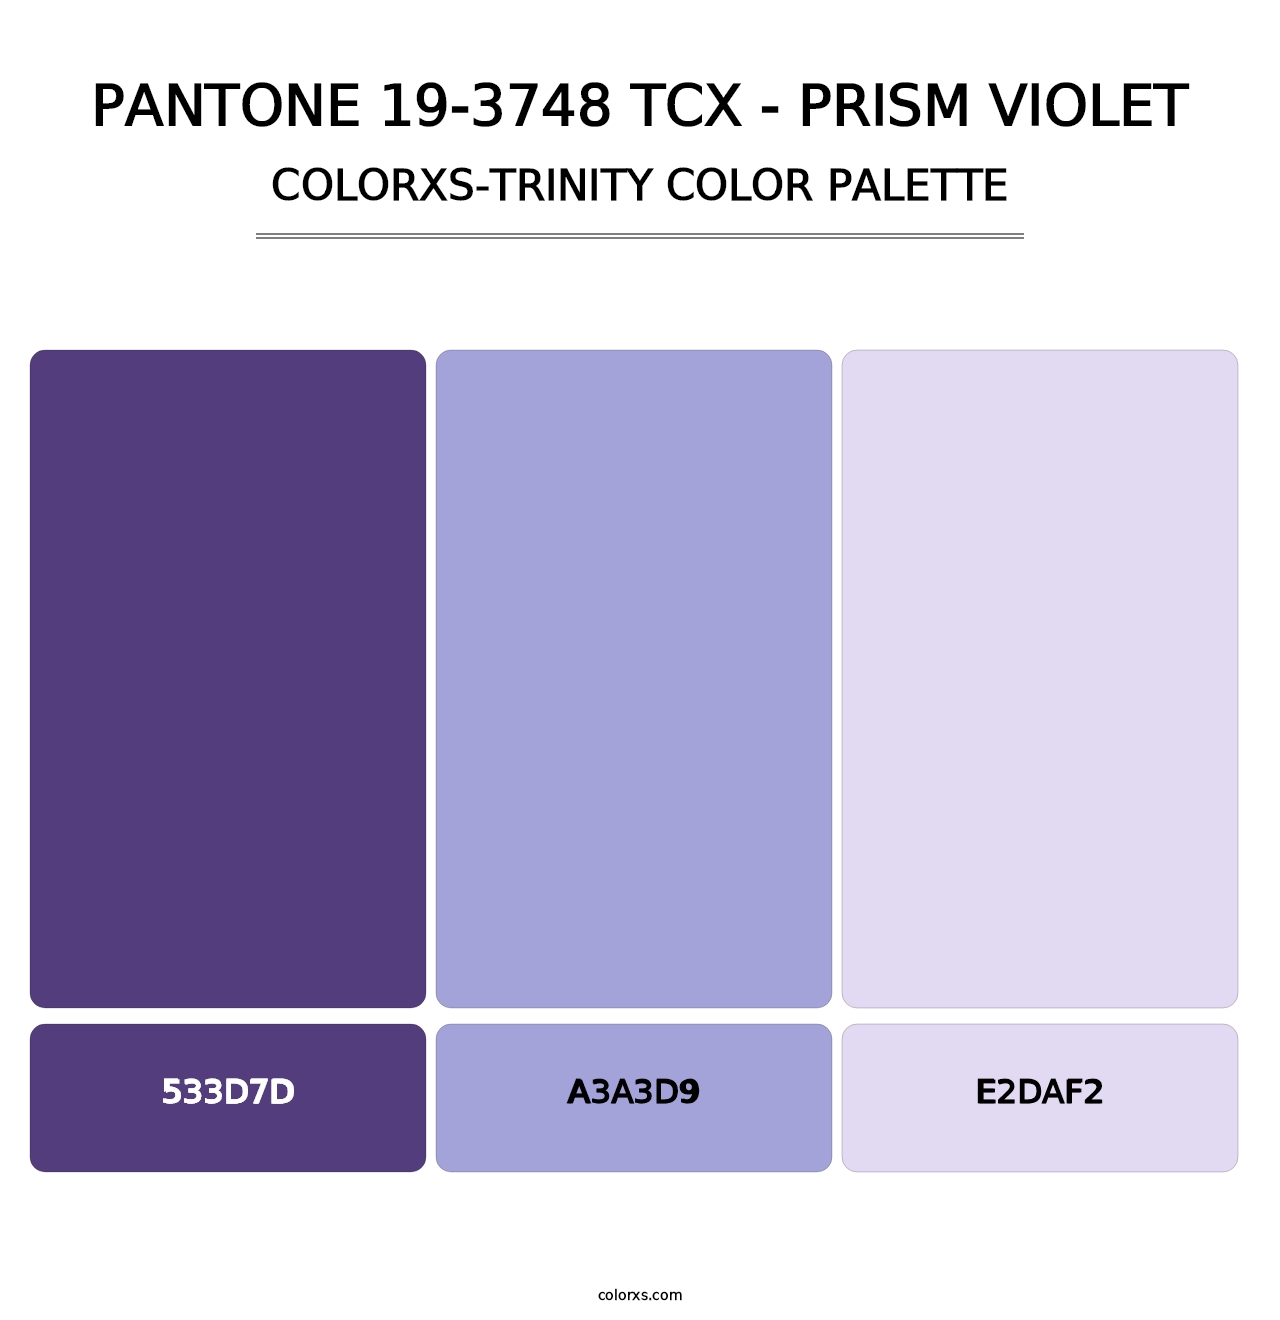 PANTONE 19-3748 TCX - Prism Violet - Colorxs Trinity Palette